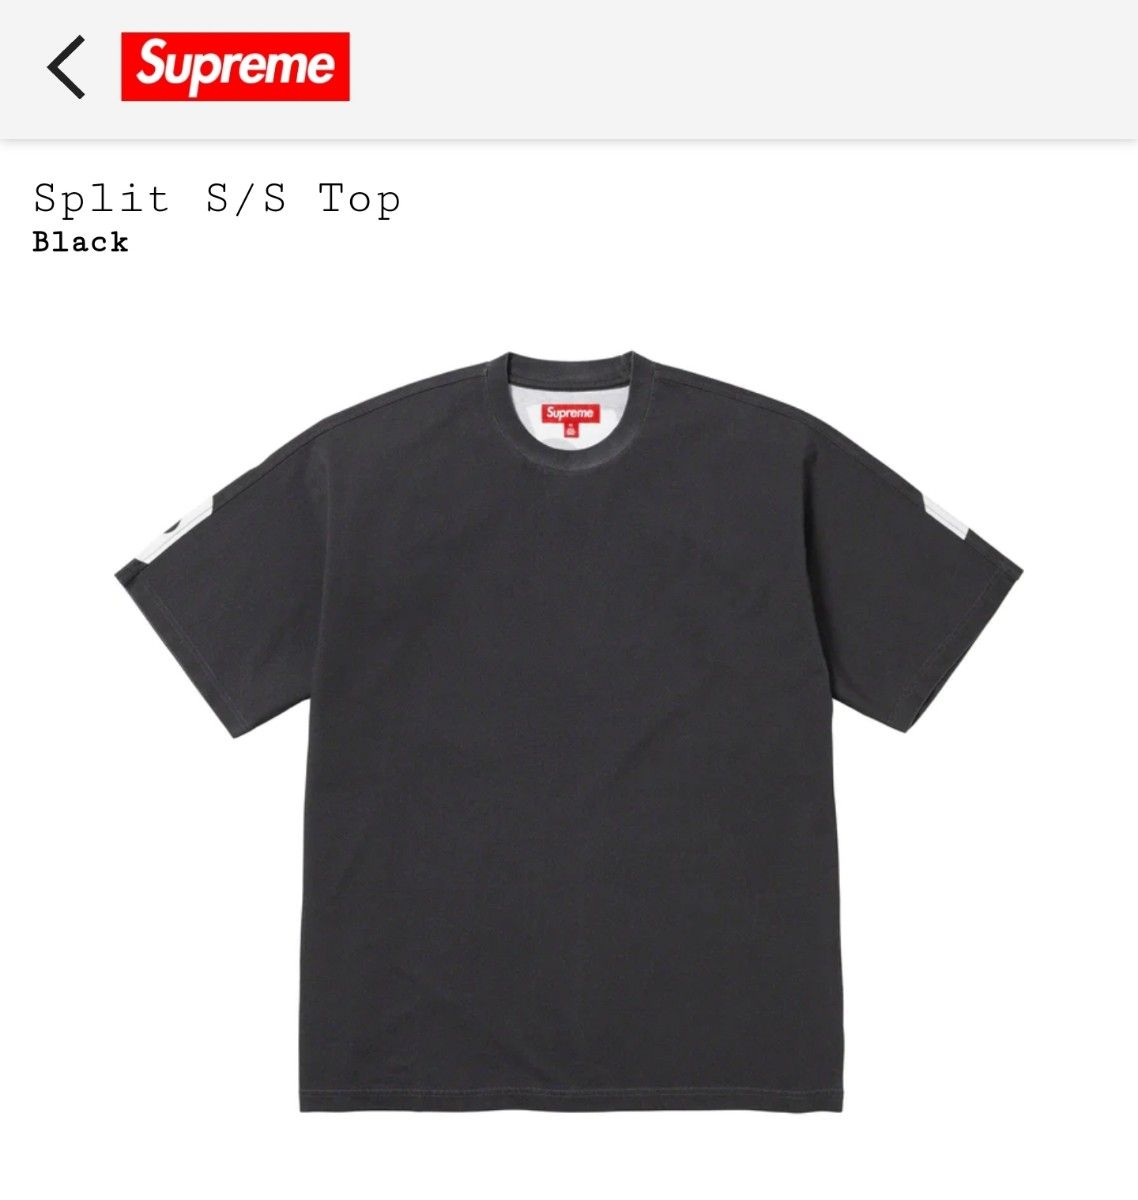 Supreme Split S/S Top XL